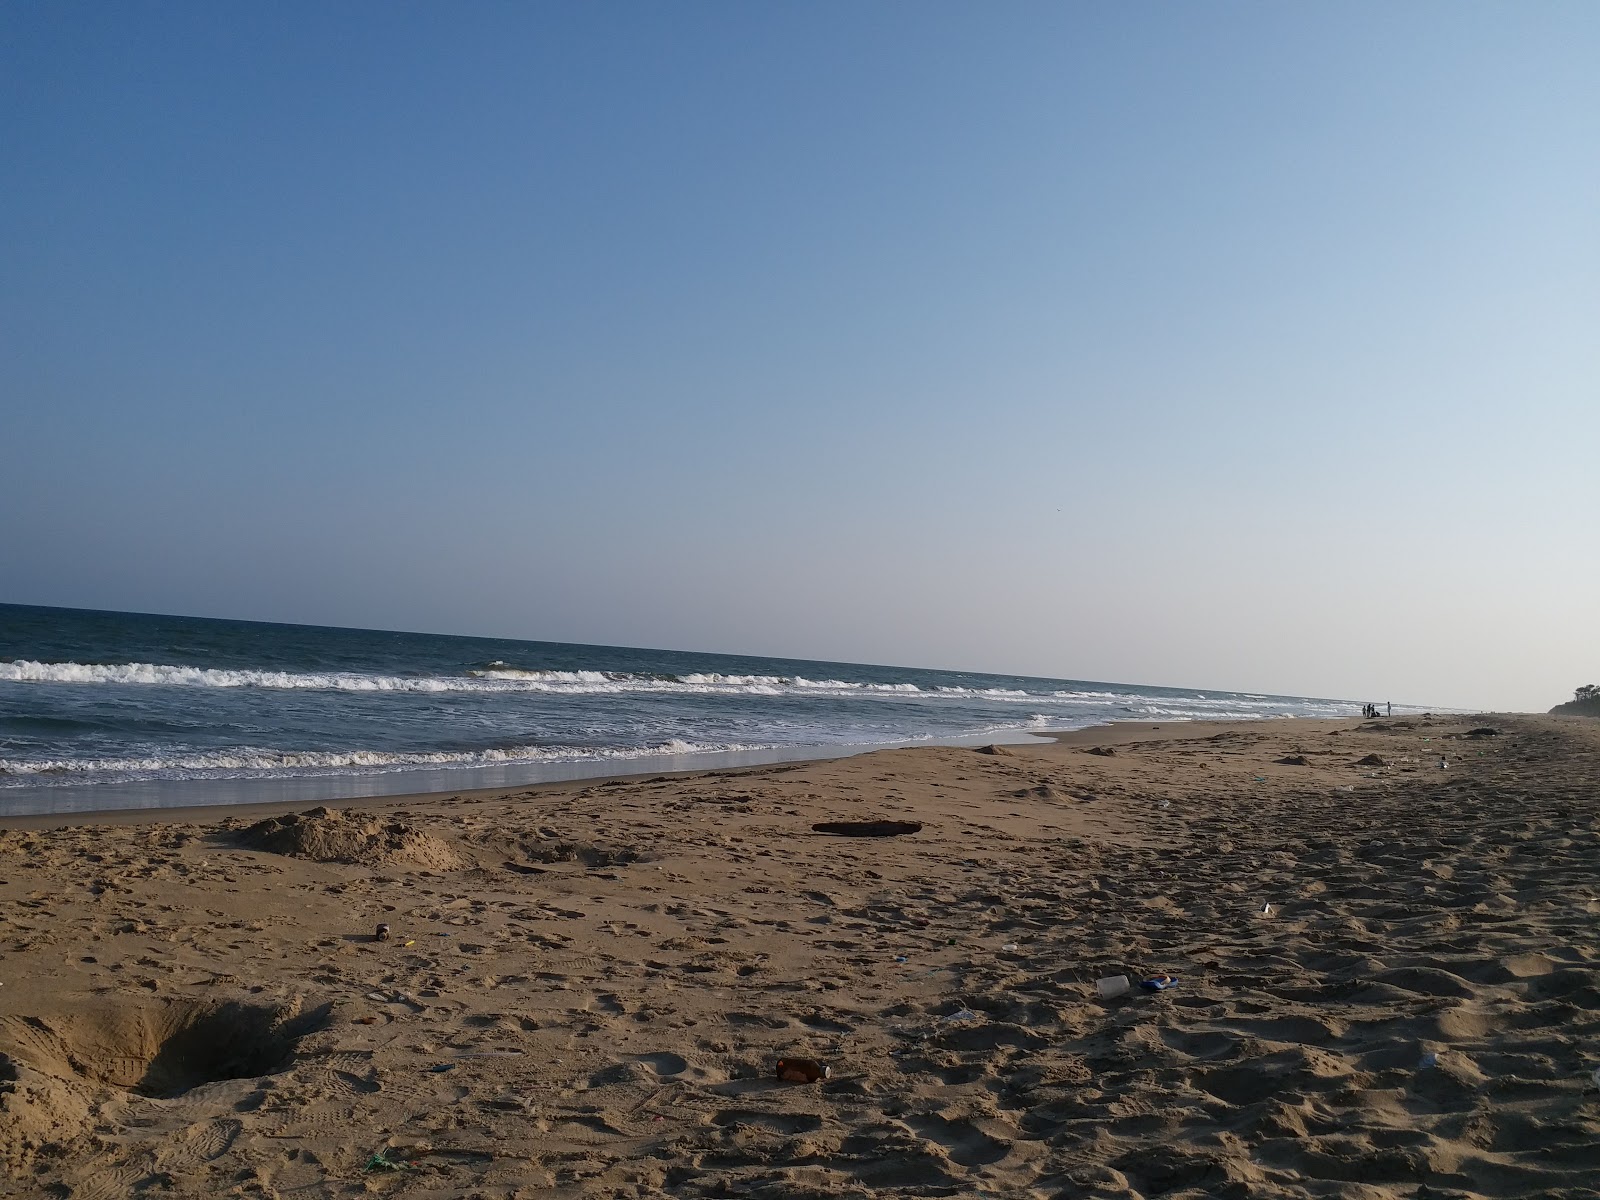 Photo de Kanathur Beach - endroit populaire parmi les connaisseurs de la détente